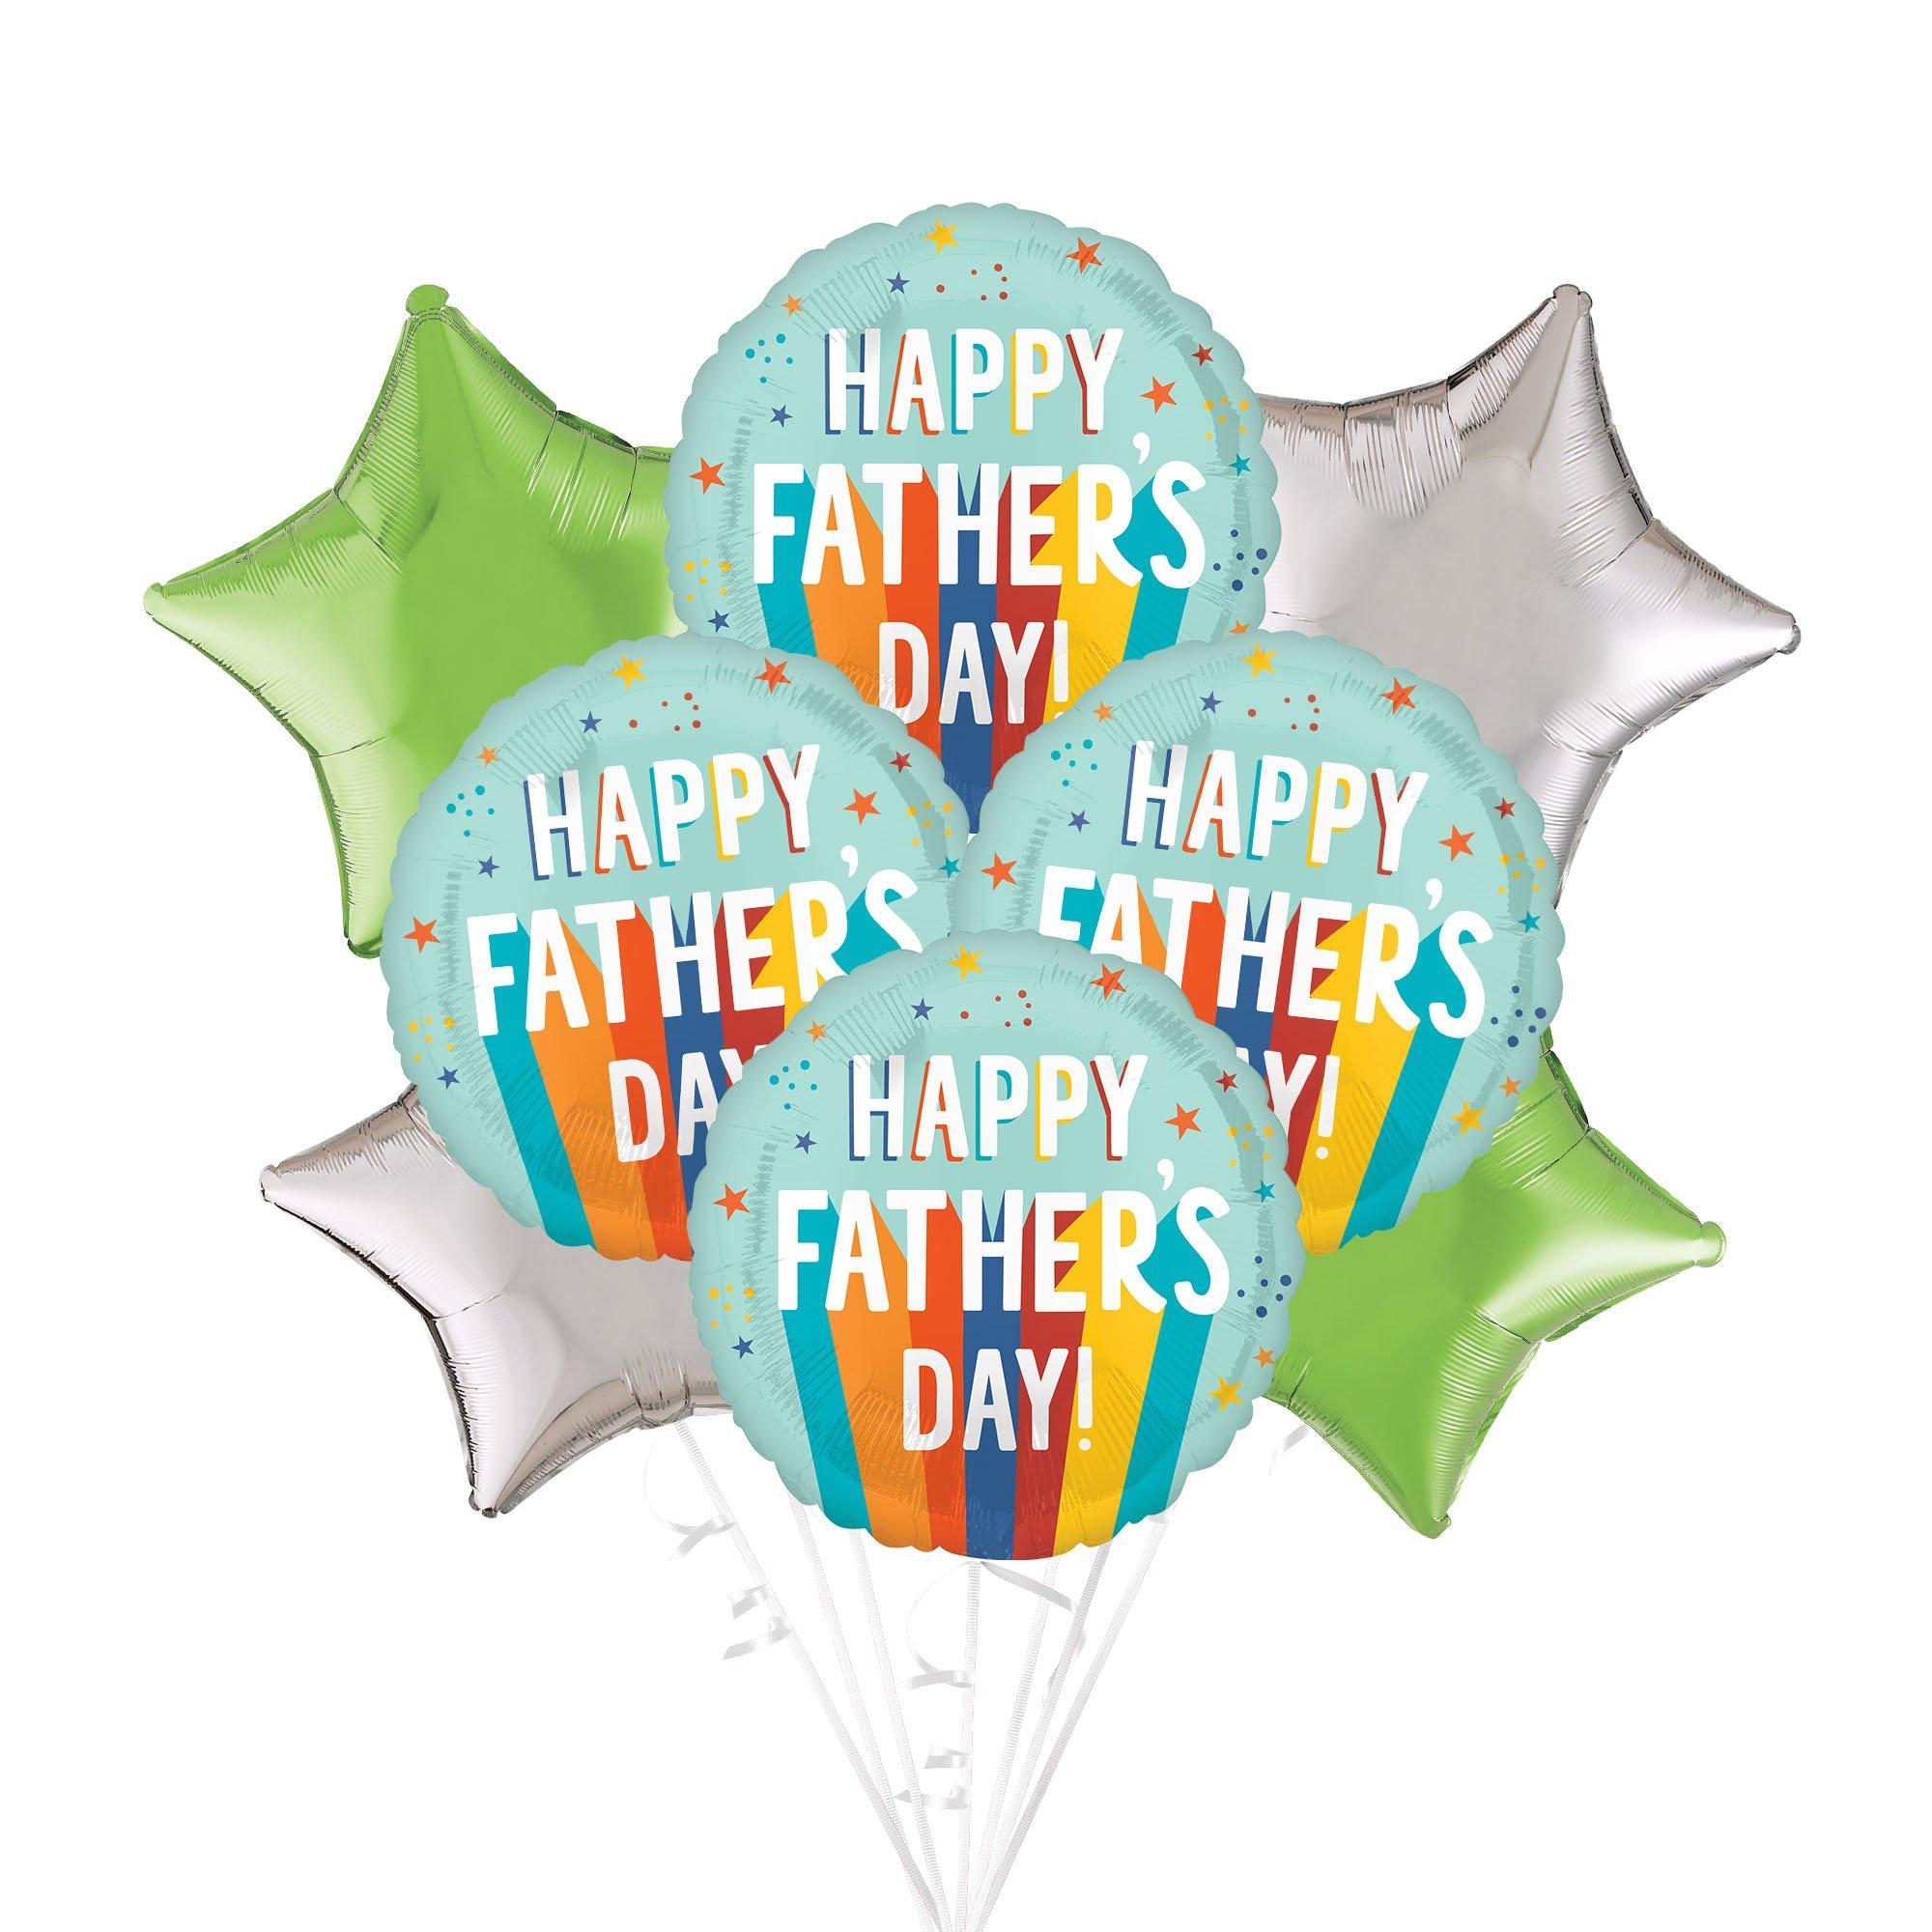 Shop Foil Ballon Happy Fathers Day online